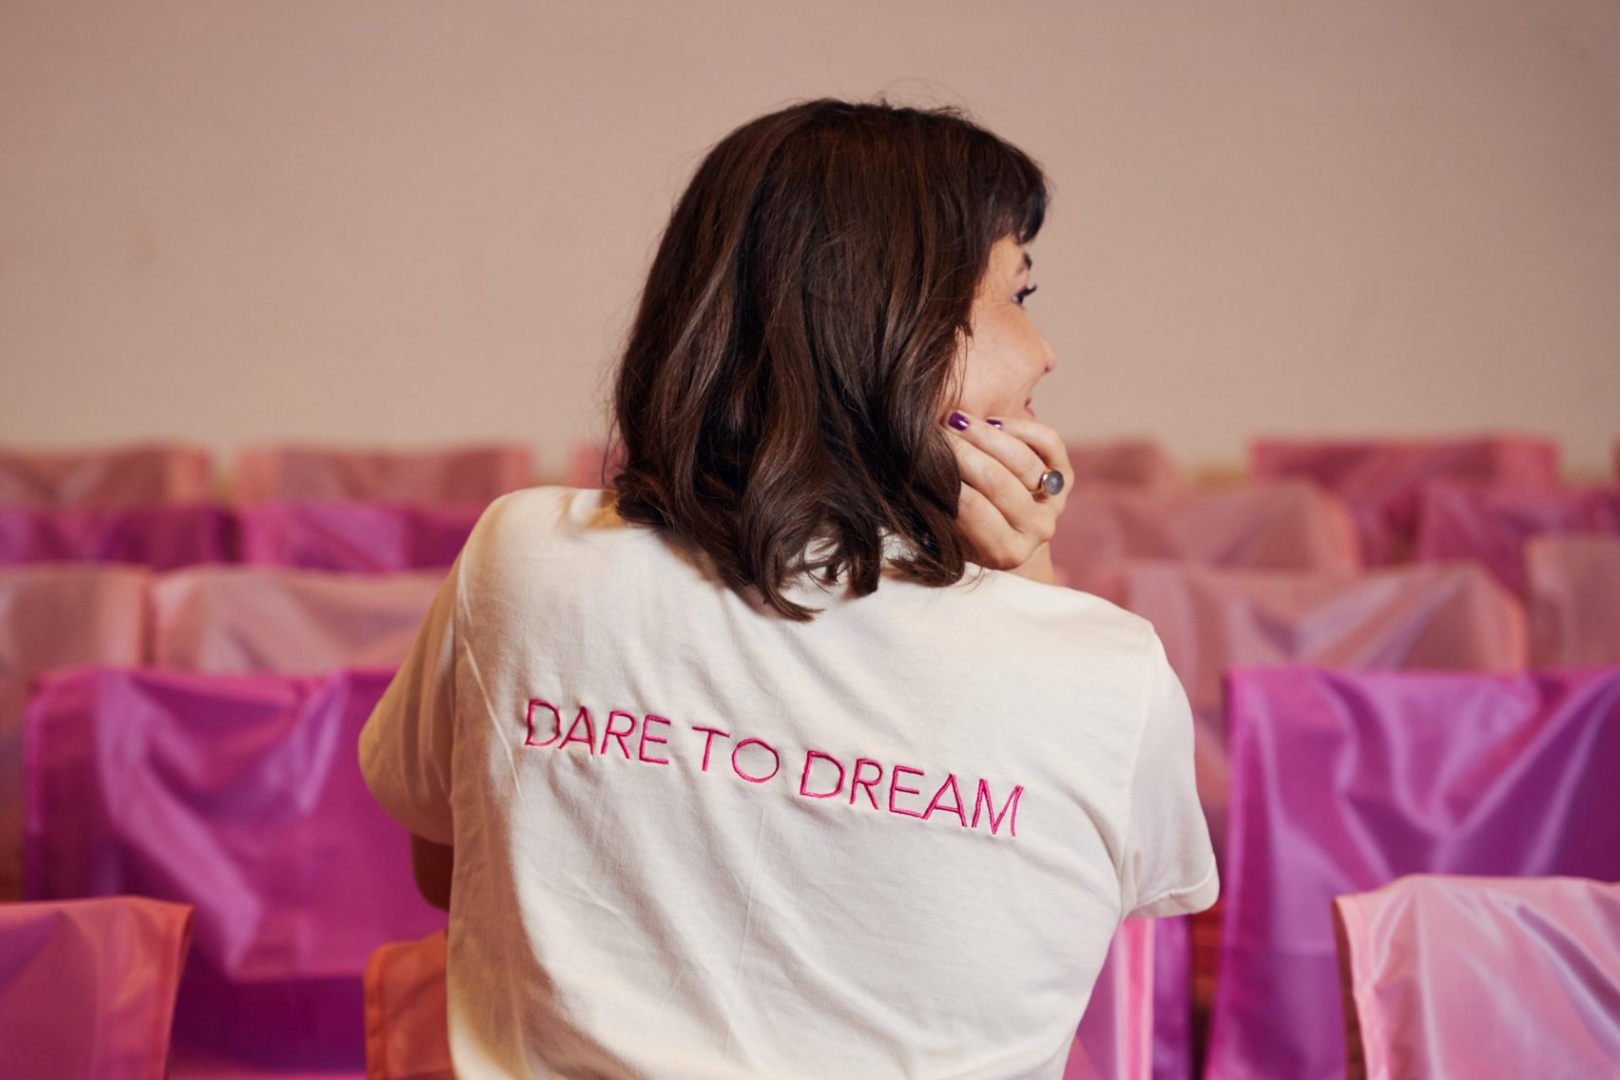 Dare to Dream: студия BIG разработала айдентику фестиваля 3 Days of Design